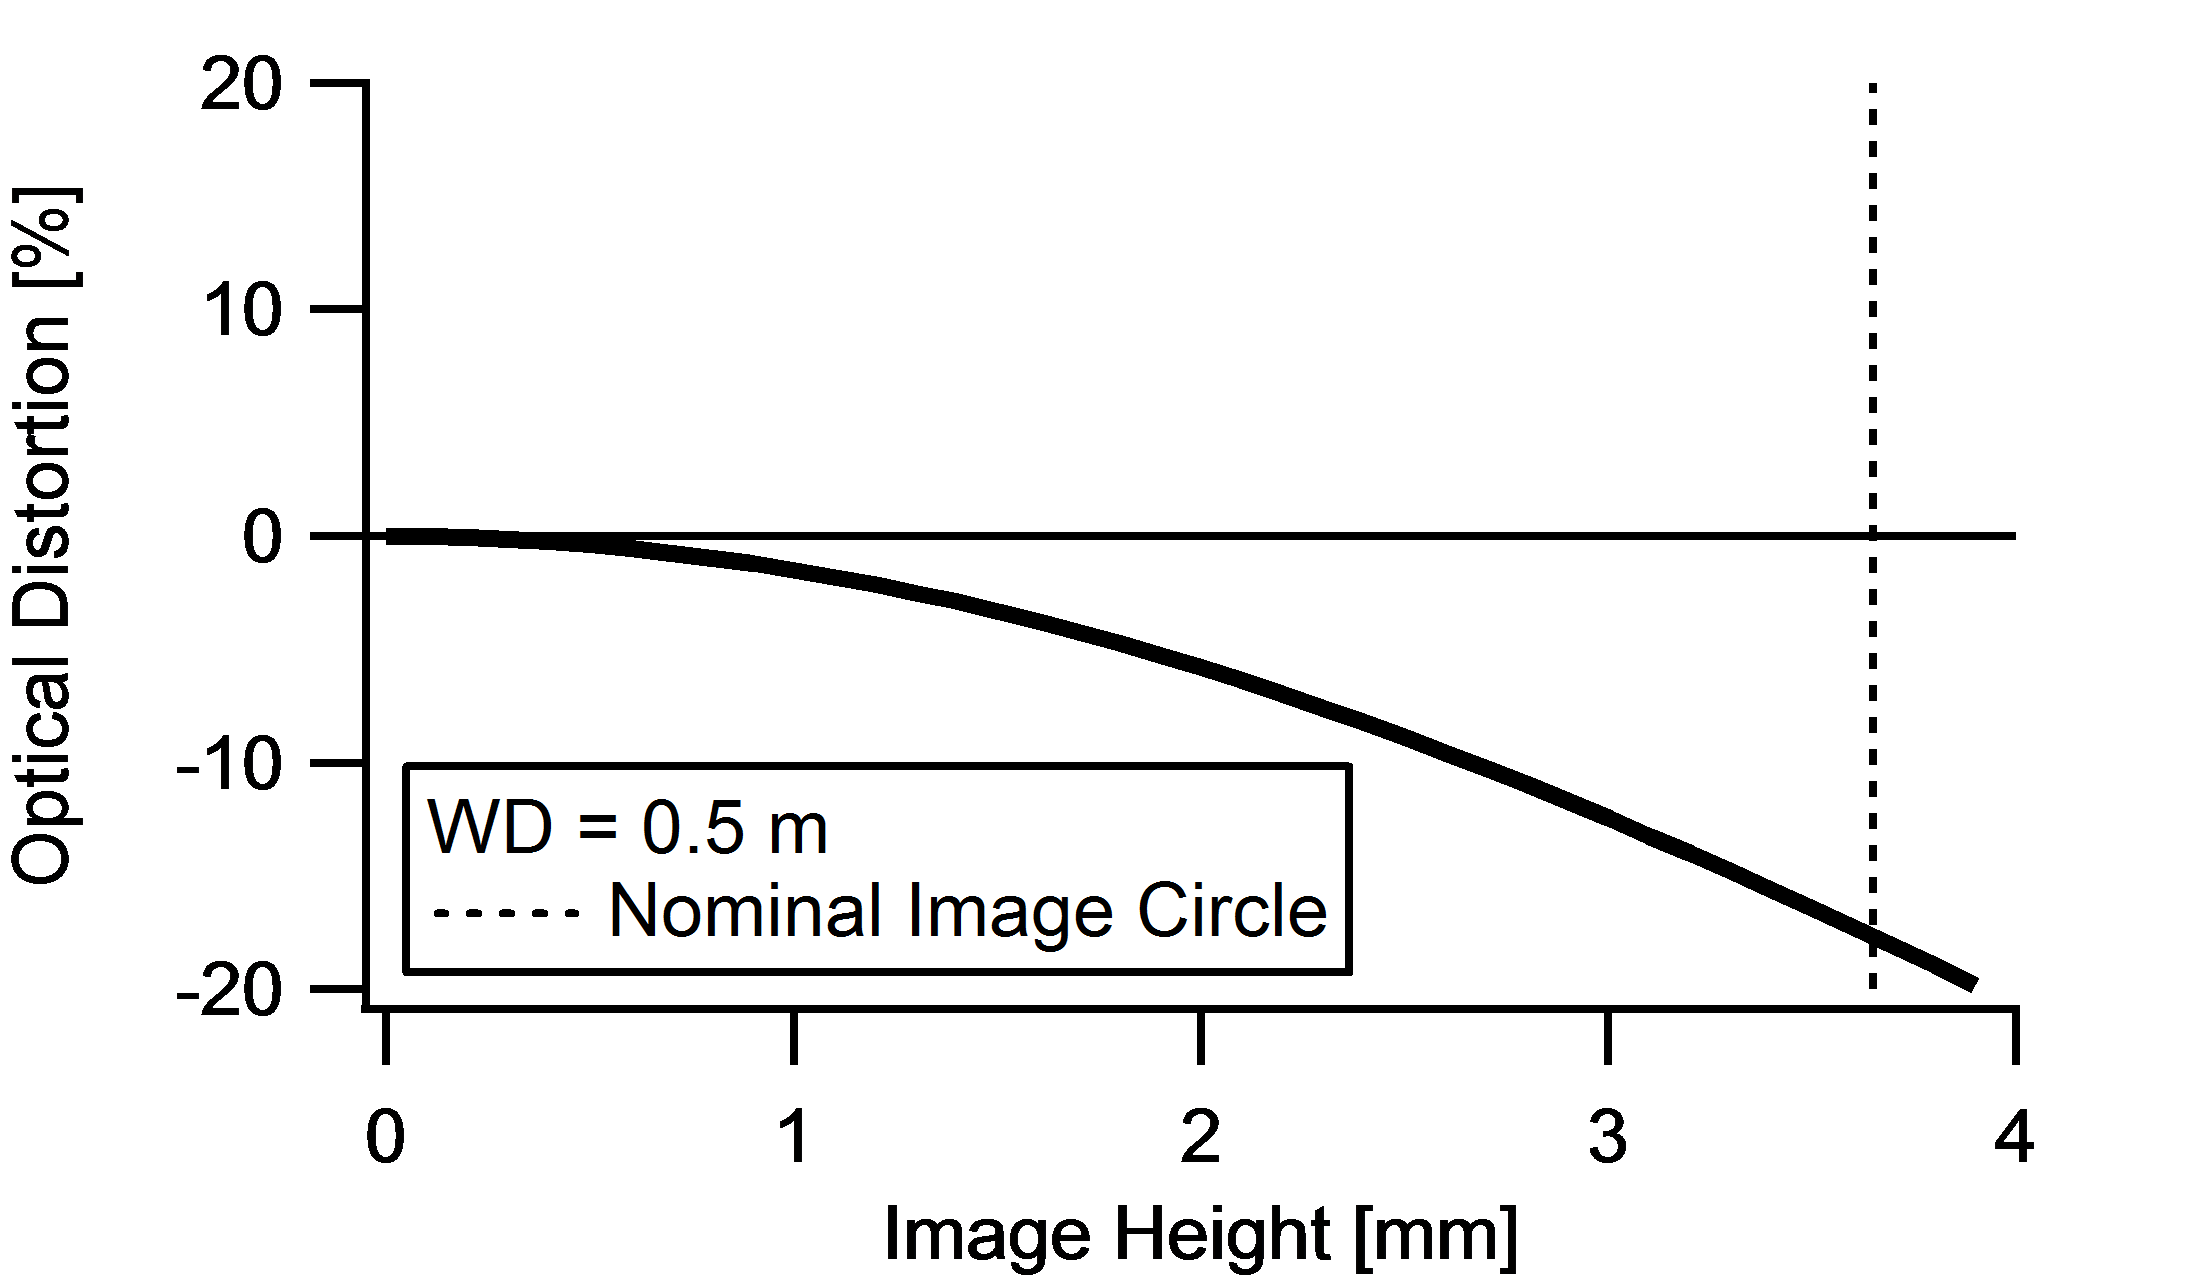 Distortion versus Image Height